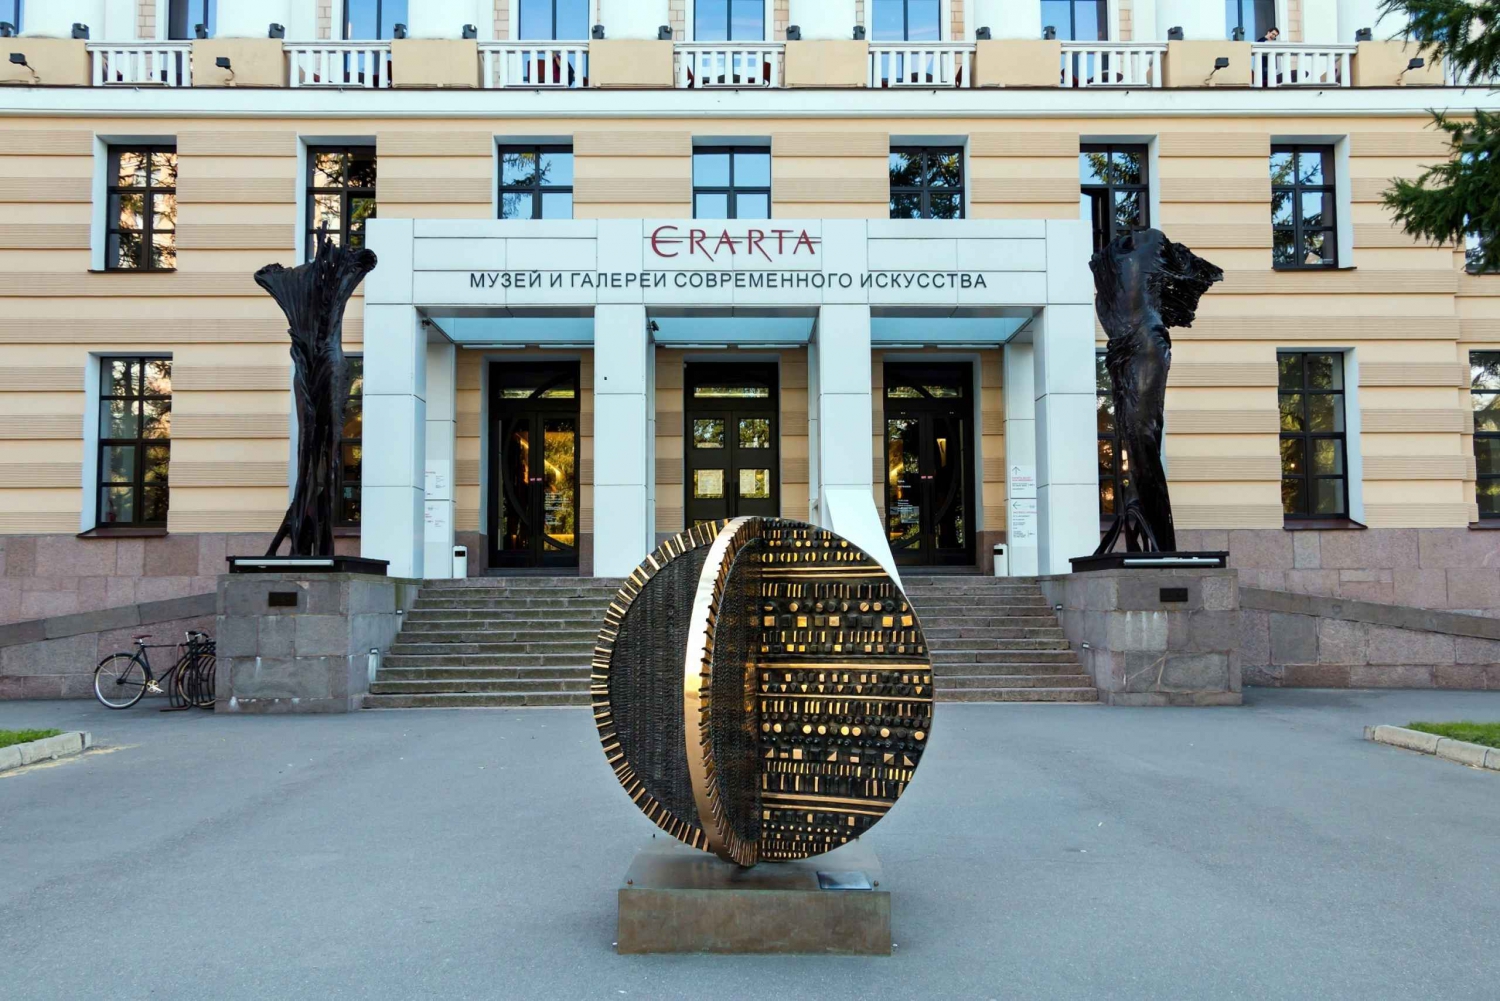 St Petersburg: Erarta Moden Art Museum Guided Tour